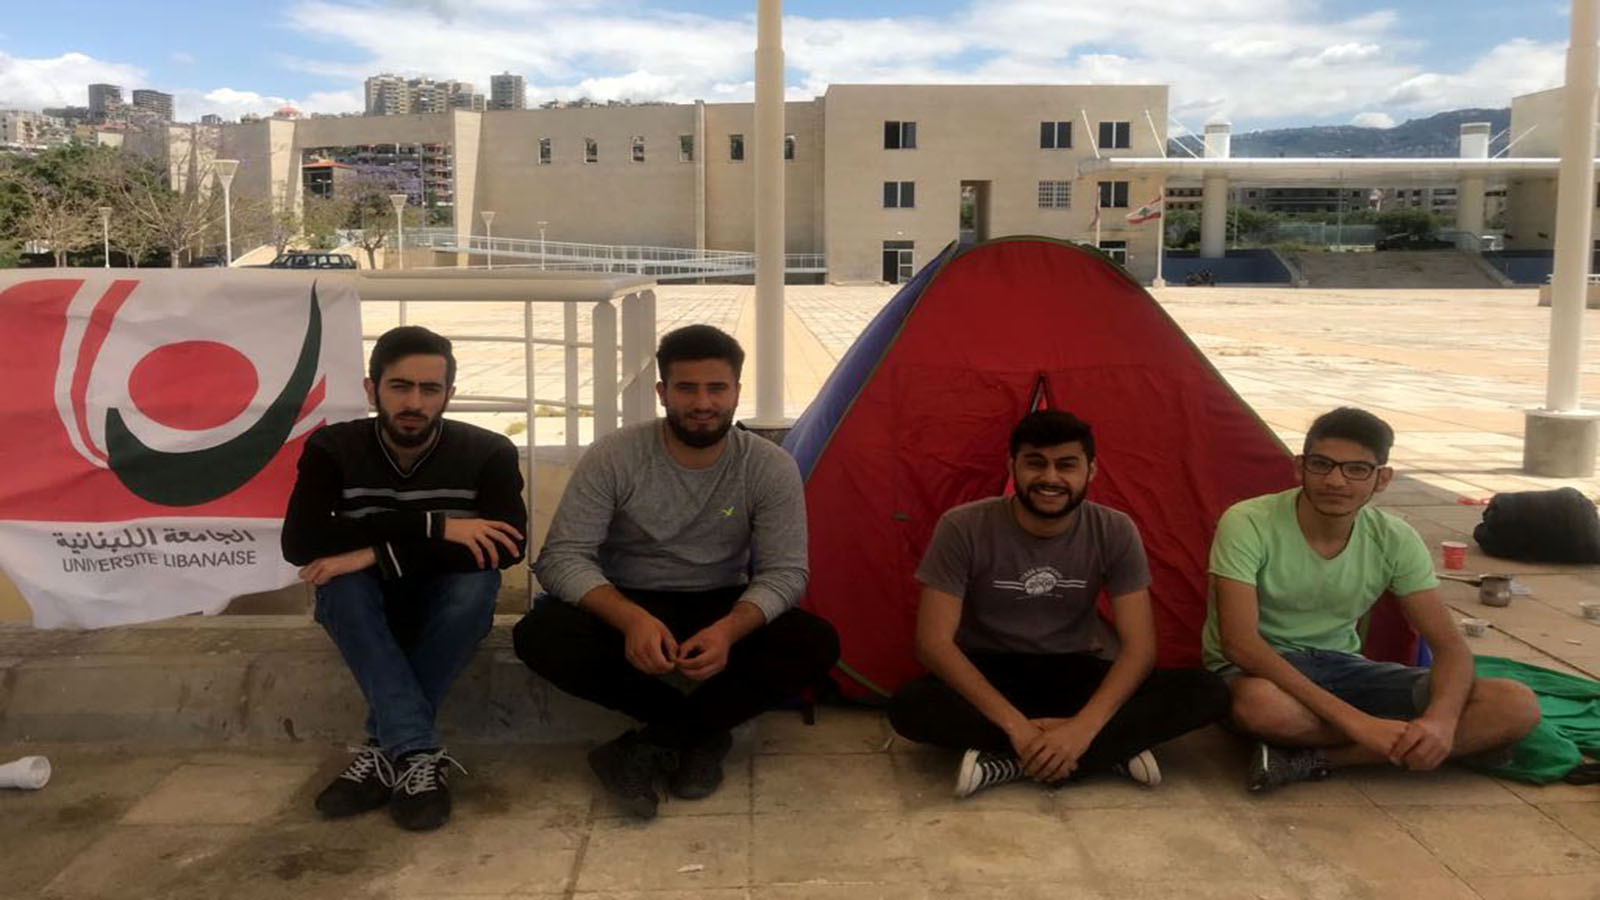 لماذا نصب طلاب اللبنانية خيماً؟